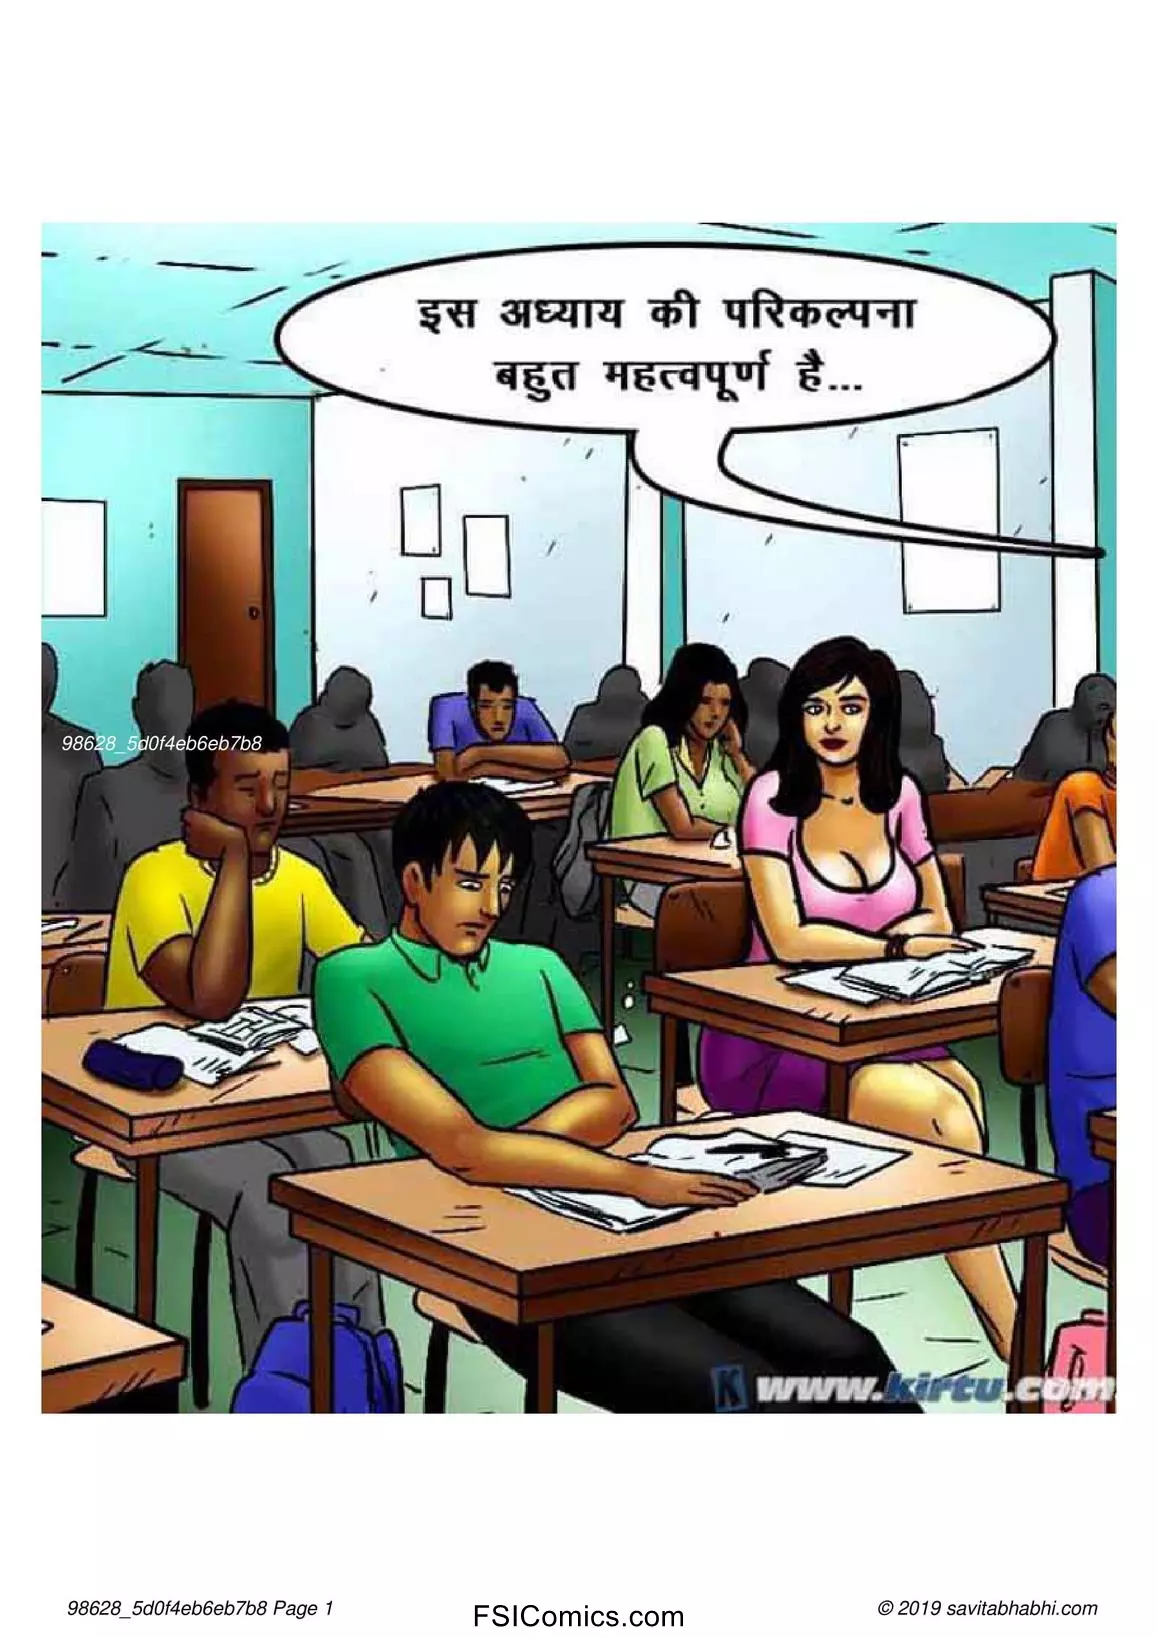 Savita Bhabhi Episode 69 Hindi – छात्रों का मामला – सविता भाभी गयी – XXX अपार्टमेंट में - 39 - FSIComics